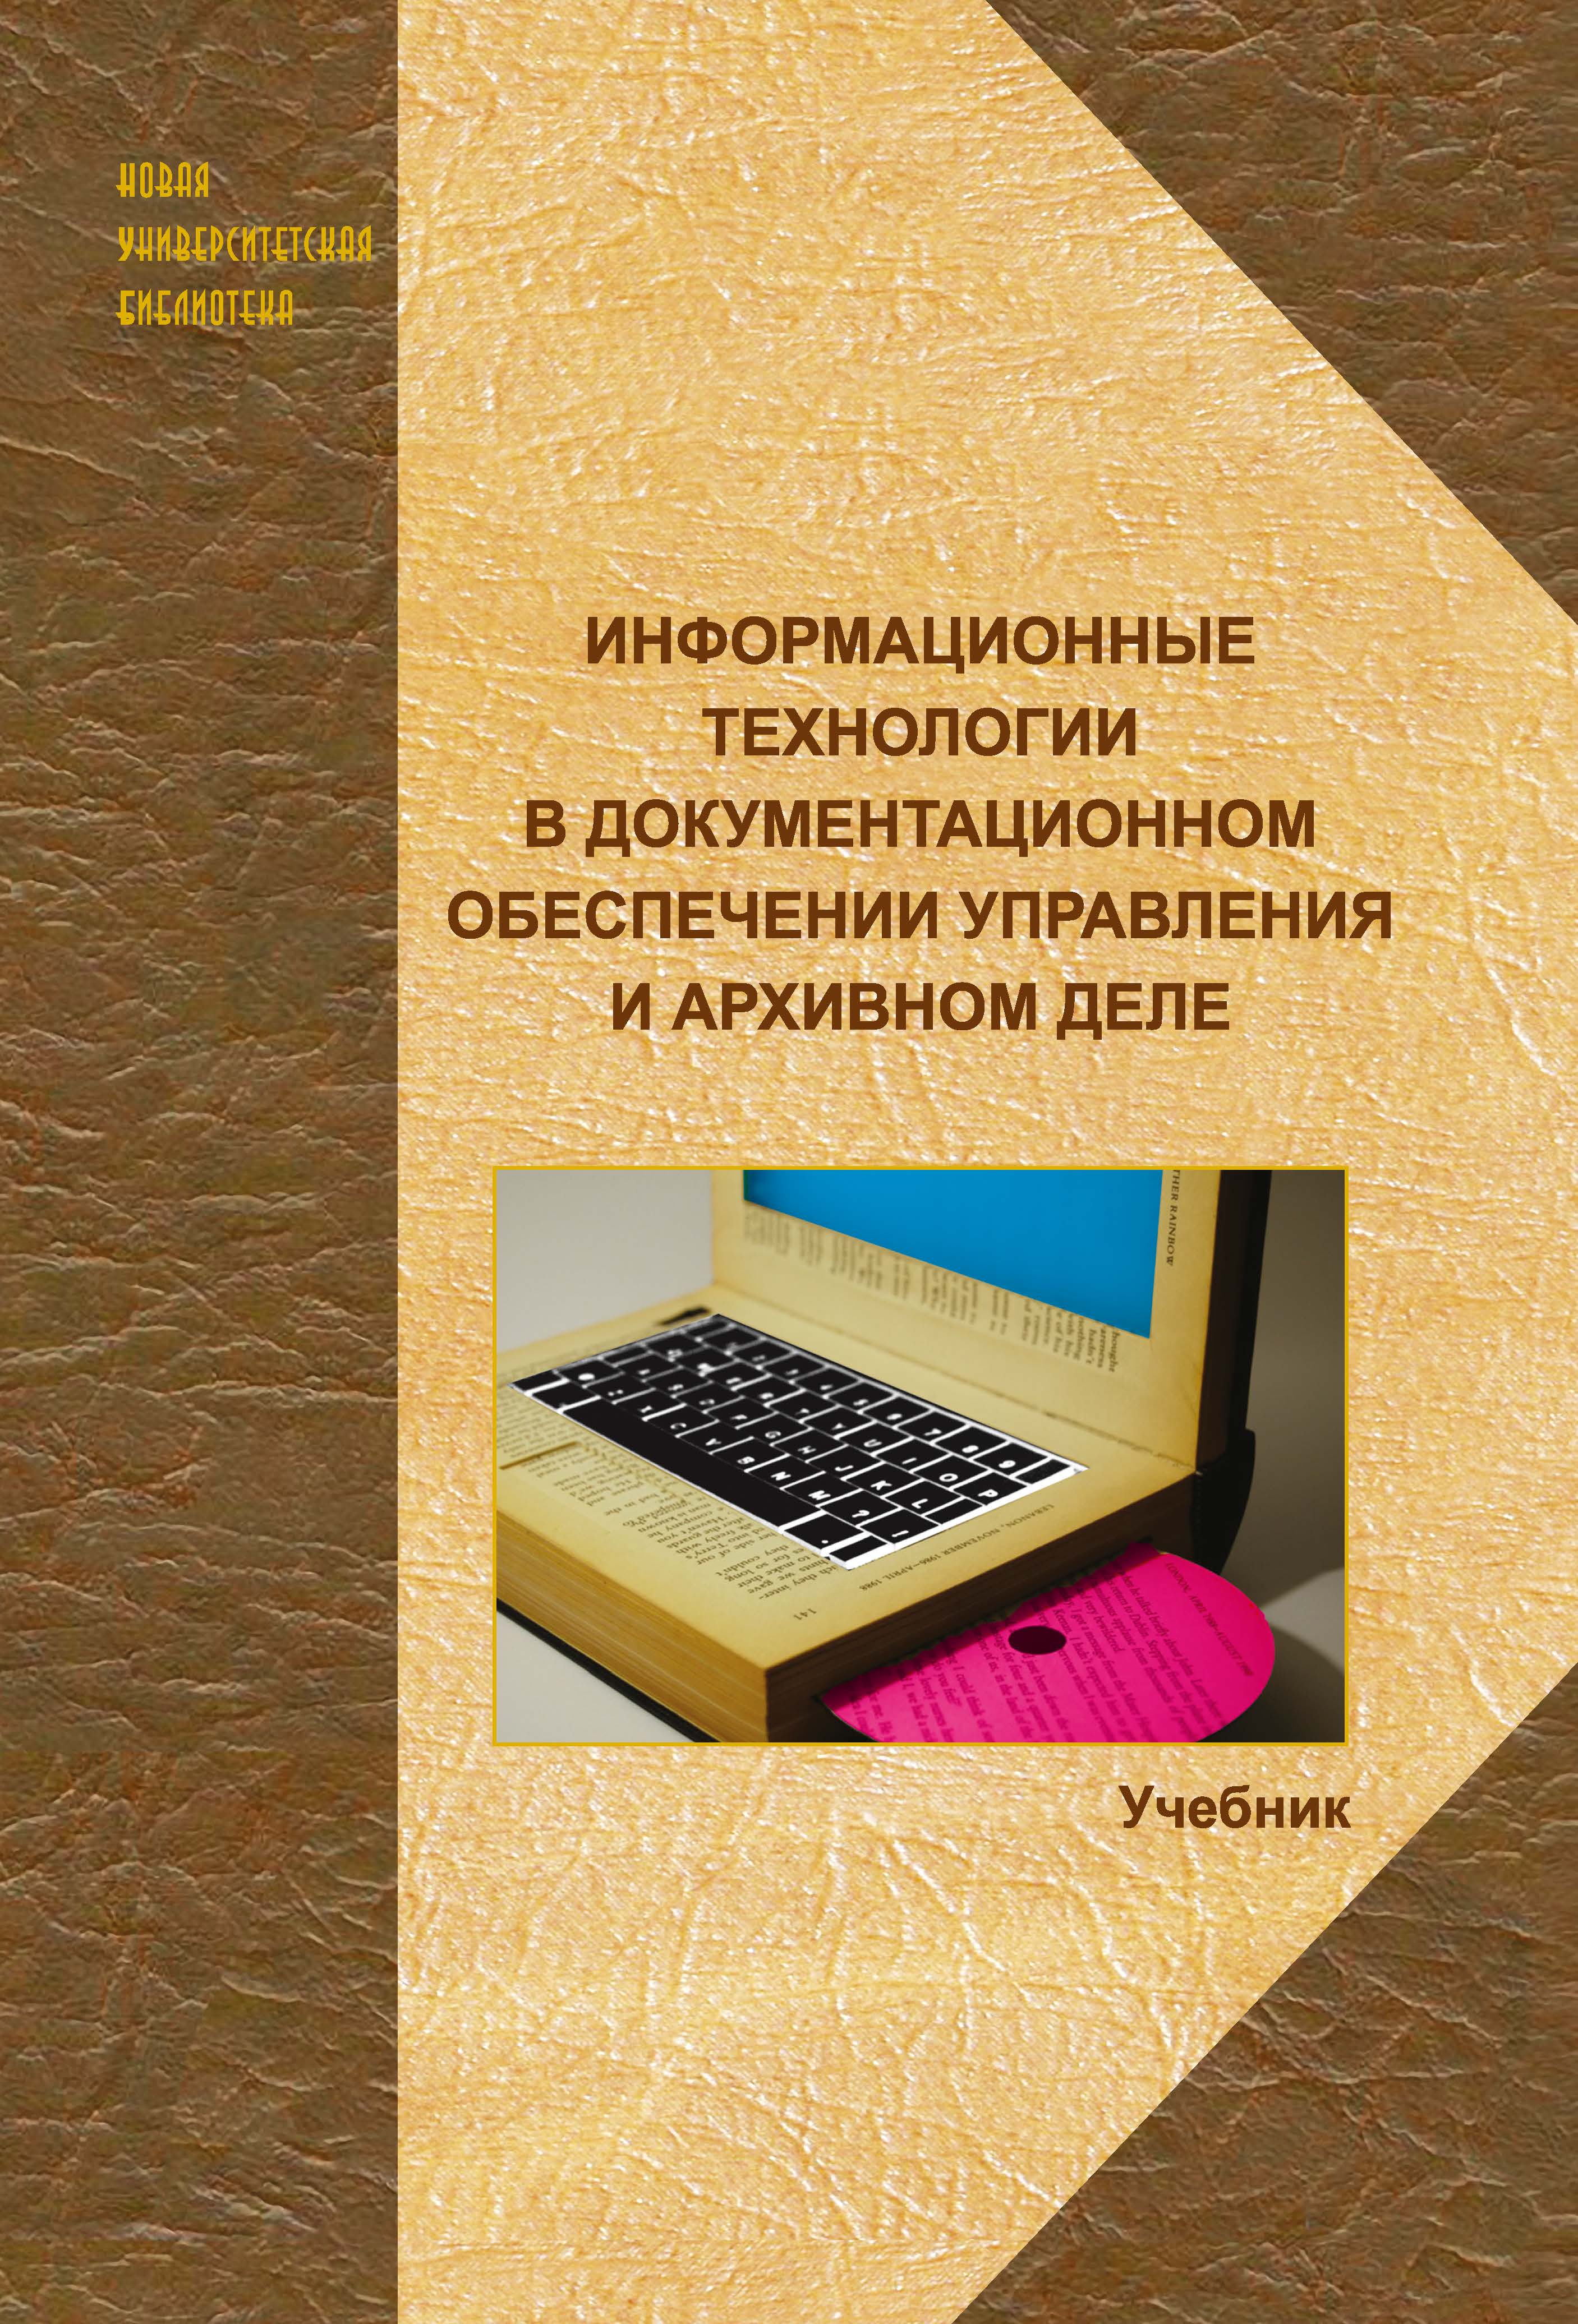 Куняев Н. Н. Информационные технологии в документационном обеспечении управления и архивном деле: учебник для вузов